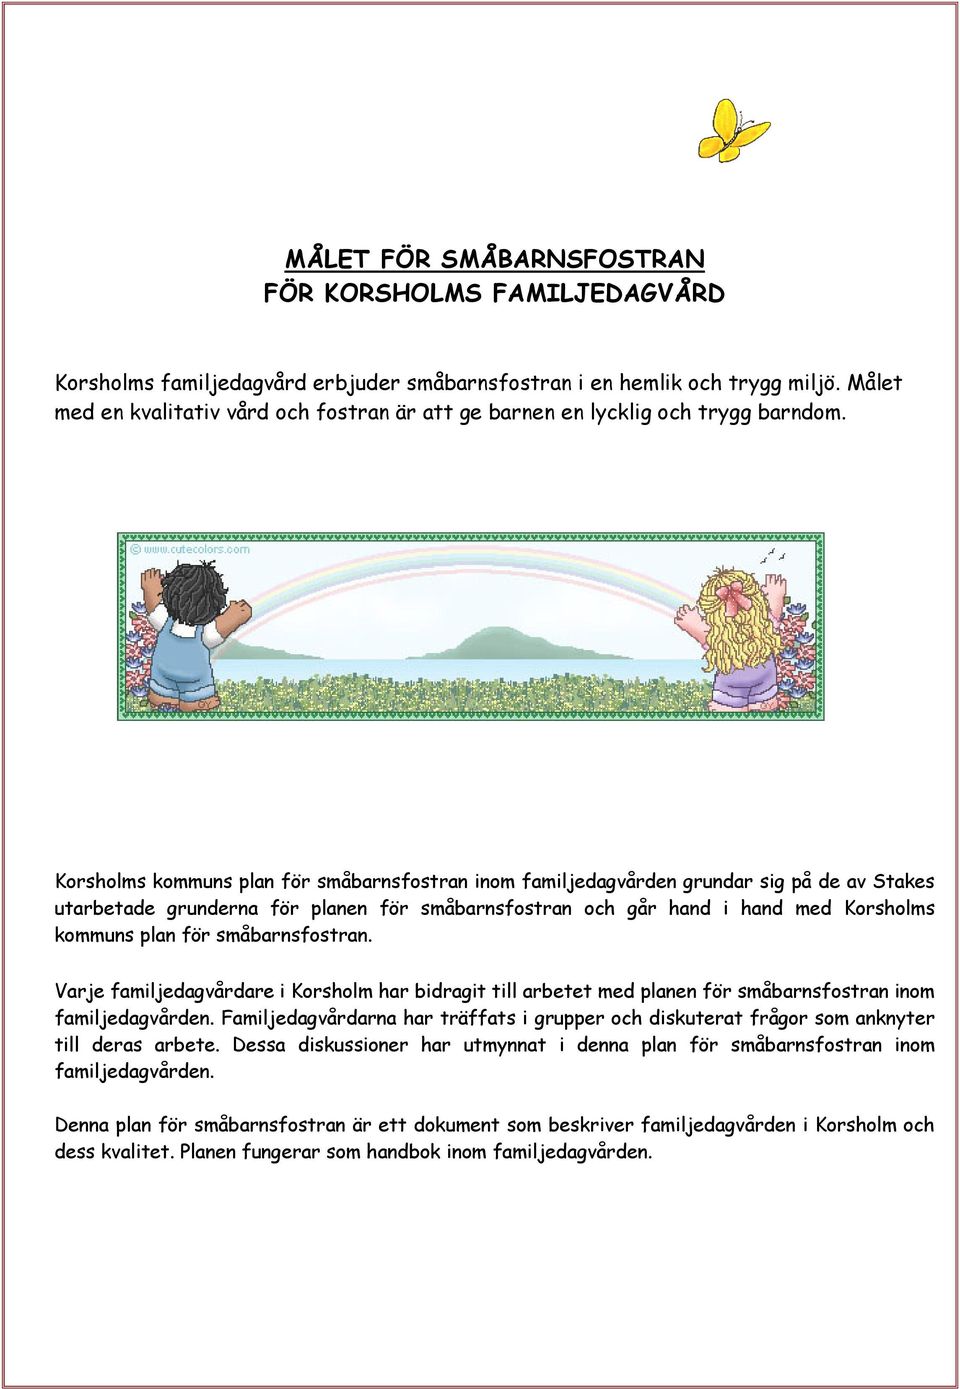 Korsholms kommuns plan för småbarnsfostran inom familjedagvården grundar sig på de av Stakes utarbetade grunderna för planen för småbarnsfostran och går hand i hand med Korsholms kommuns plan för